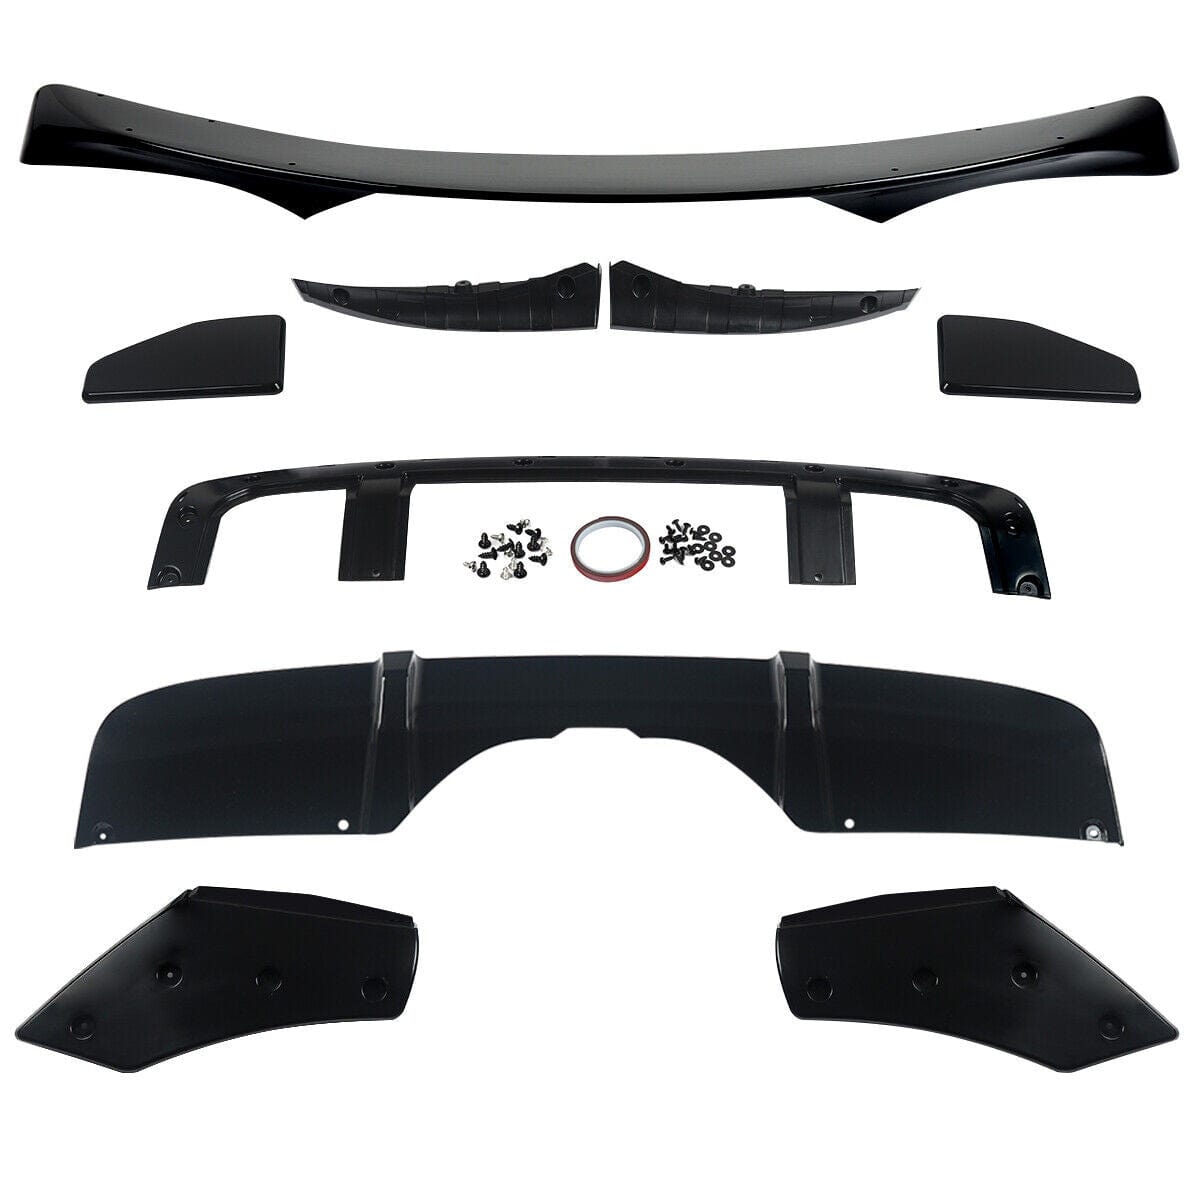 Aero kit body kit for BMW F15 X5 front spoiler diffuser splitter kit glossy black